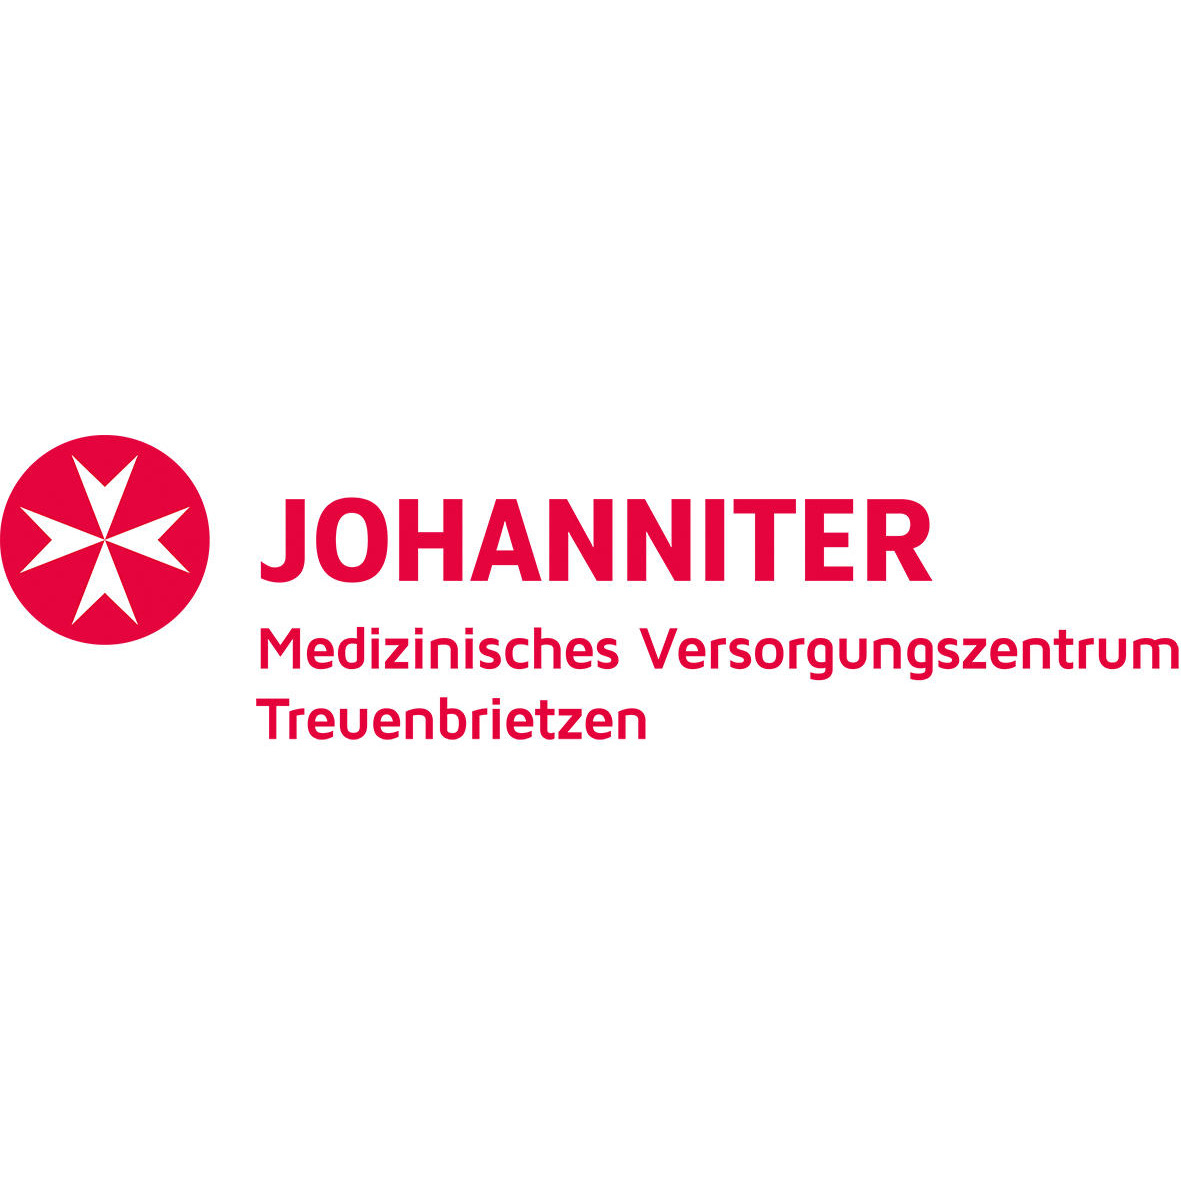 Johanniter Medizinisches Versorgungszentrum Treuenbrietzen GmbH in Treuenbrietzen - Logo